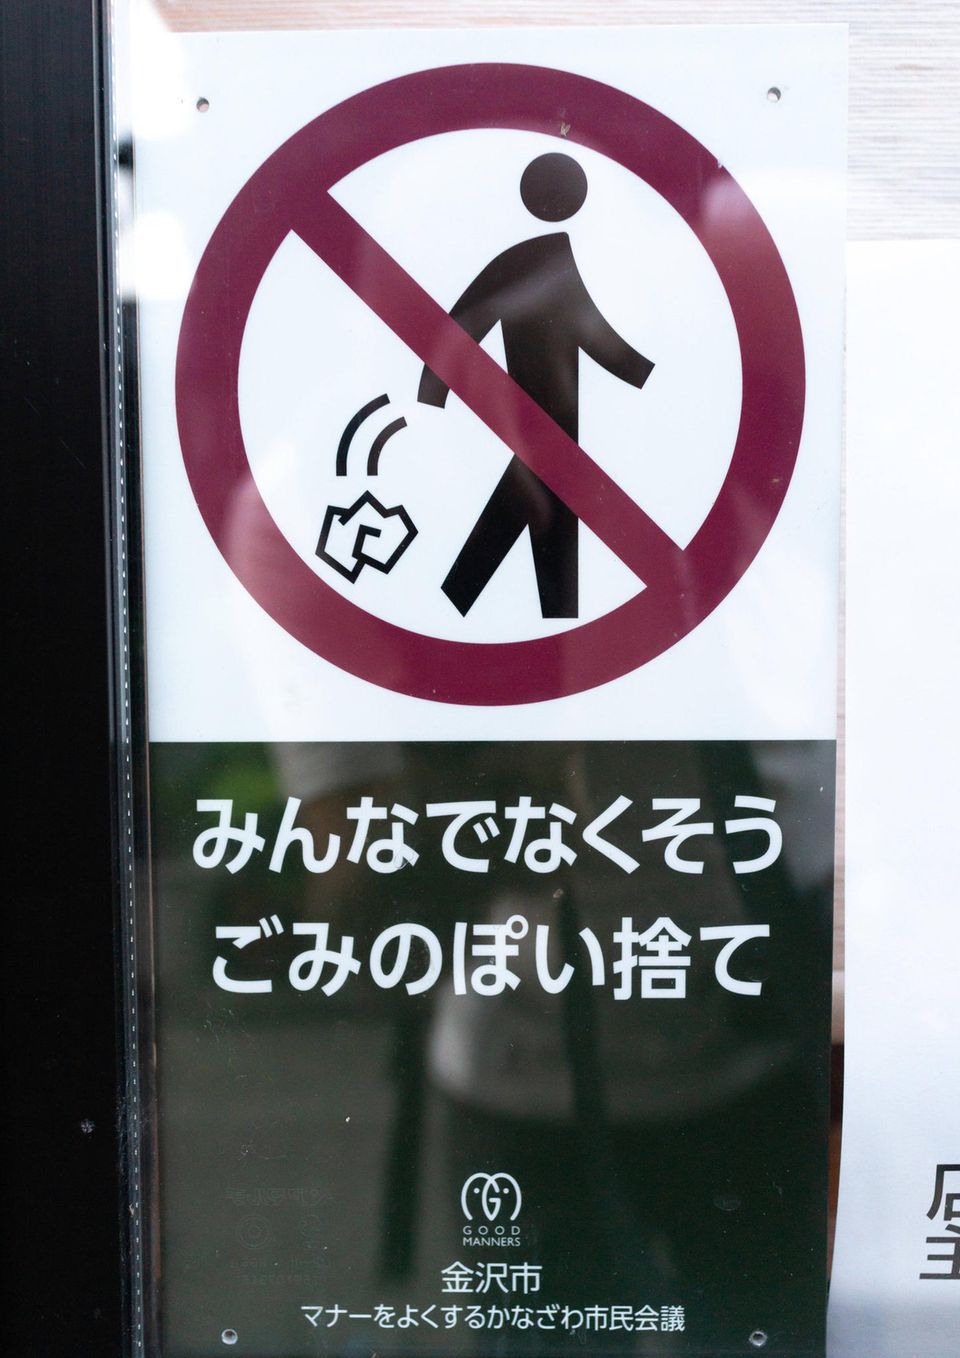 Ein Schild in Japan macht darauf aufmerksam, keinen Müll auf die Straße zu werfen